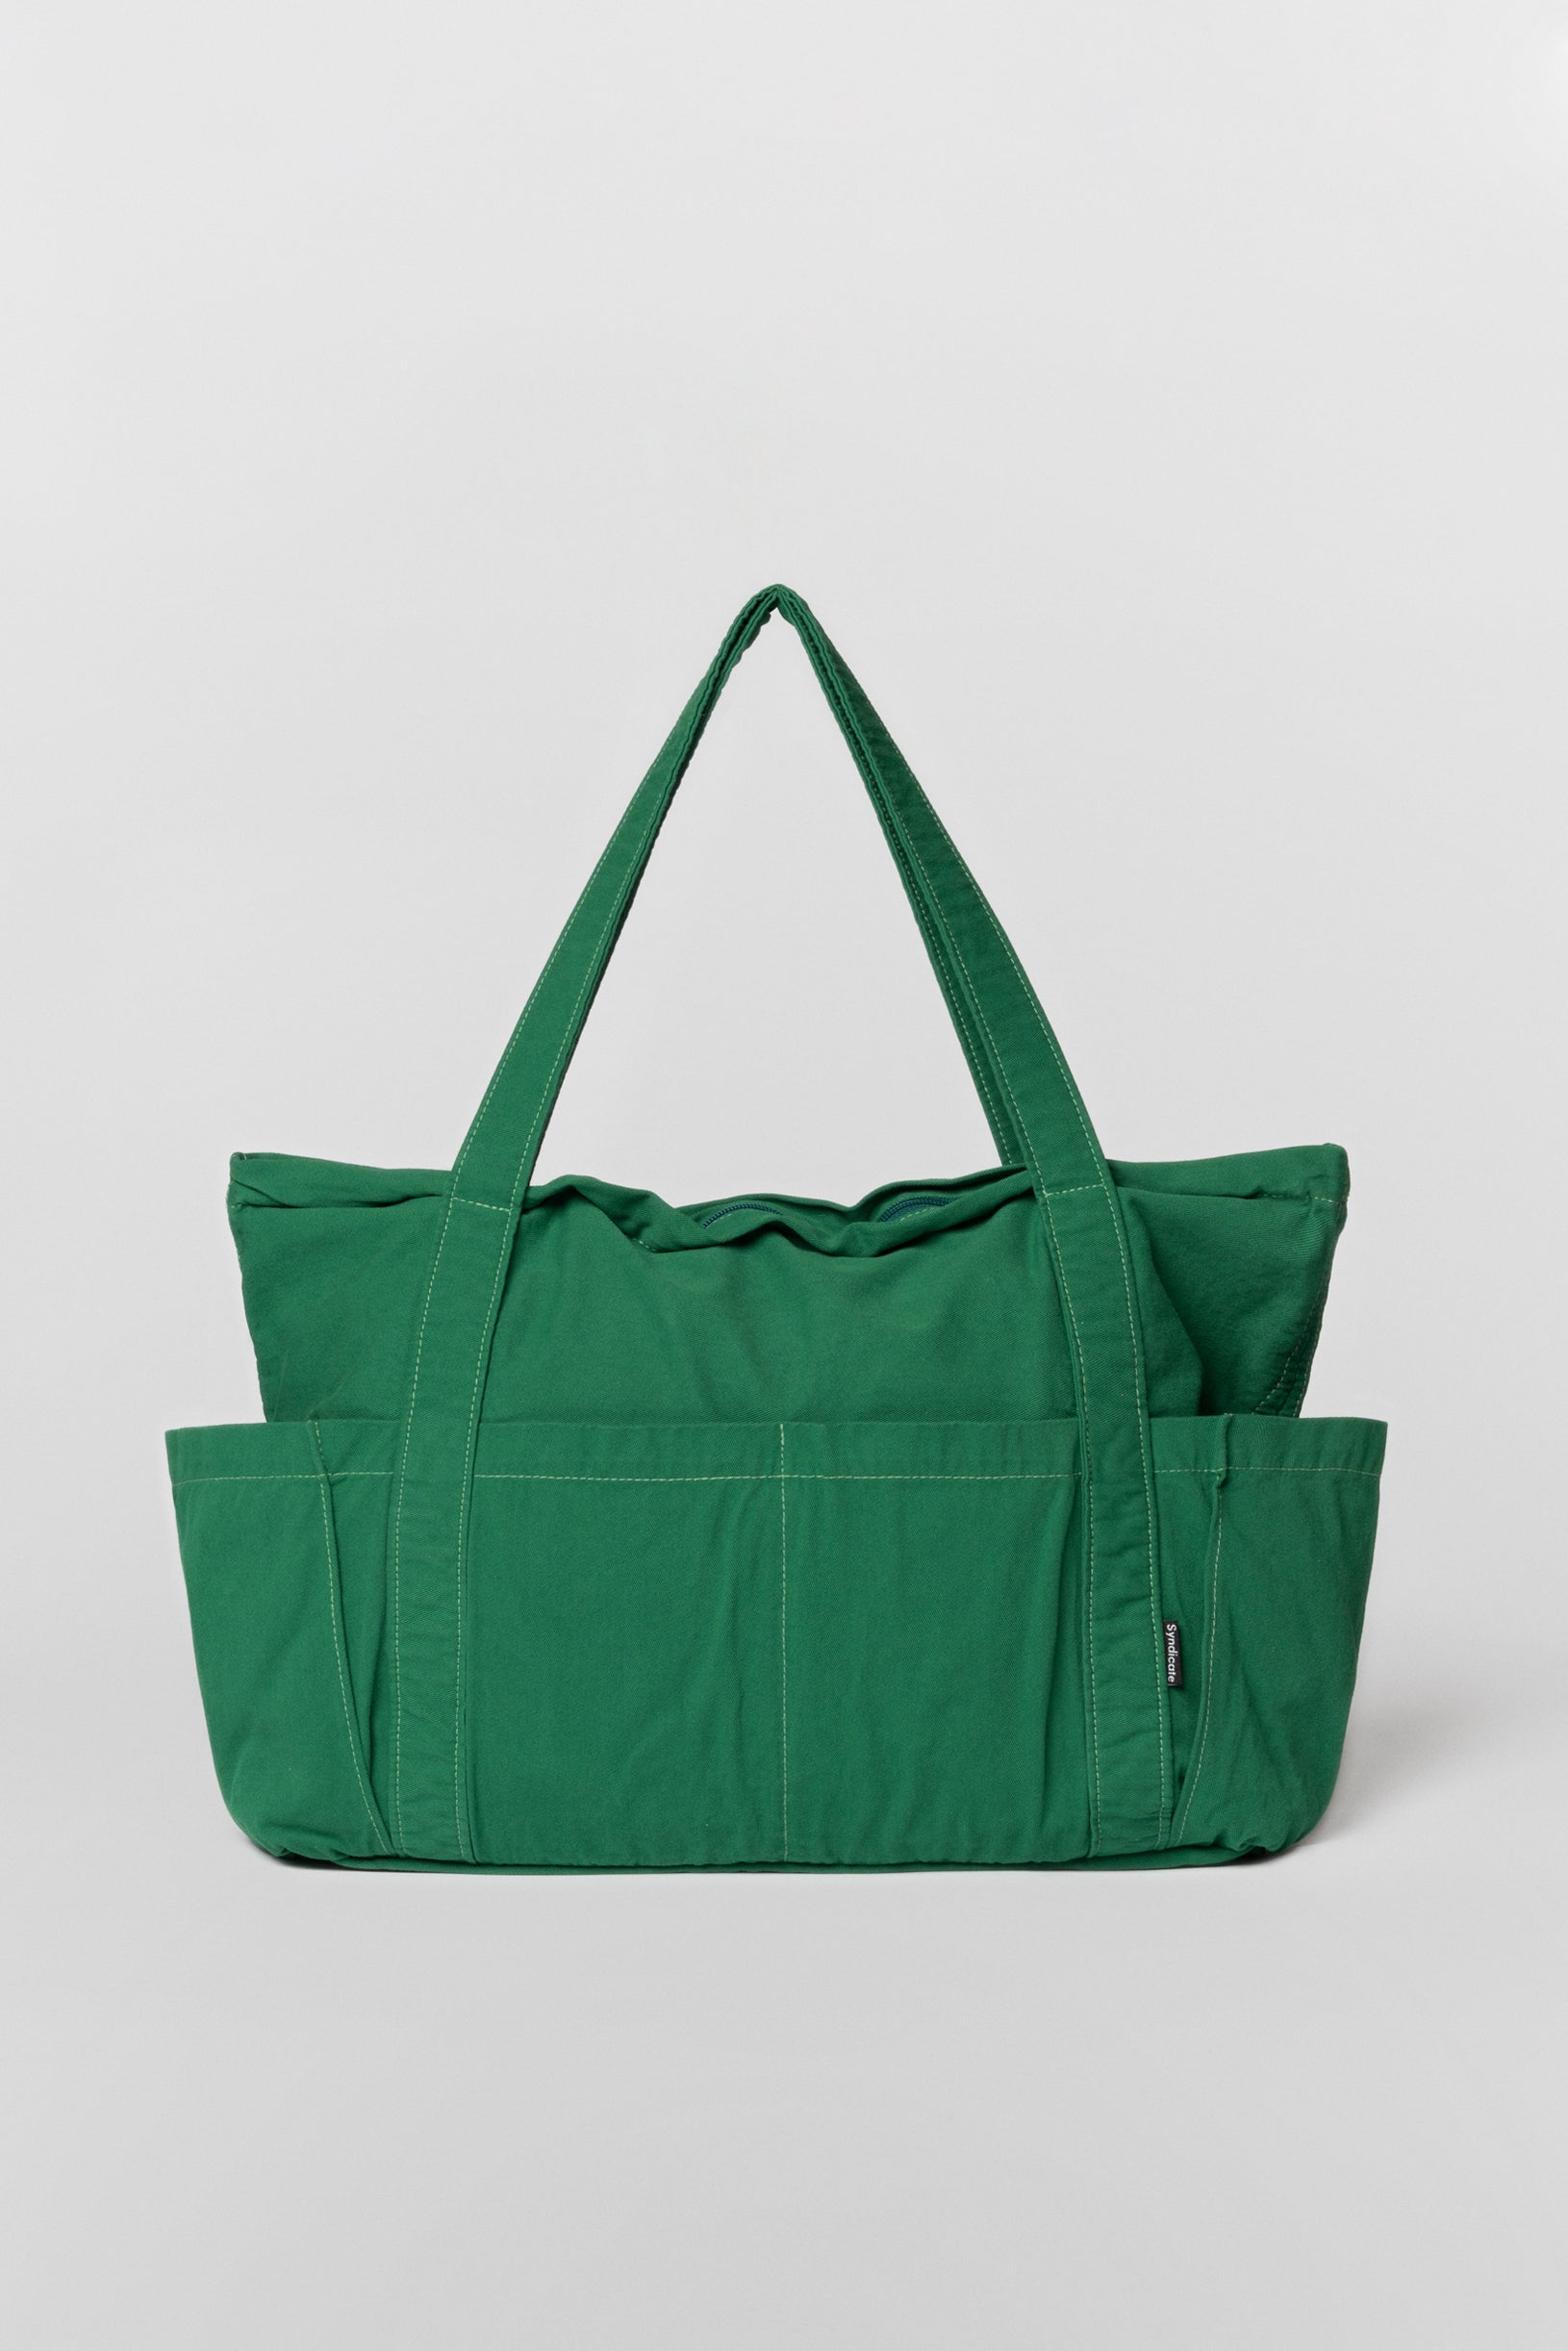 Cargo bag green